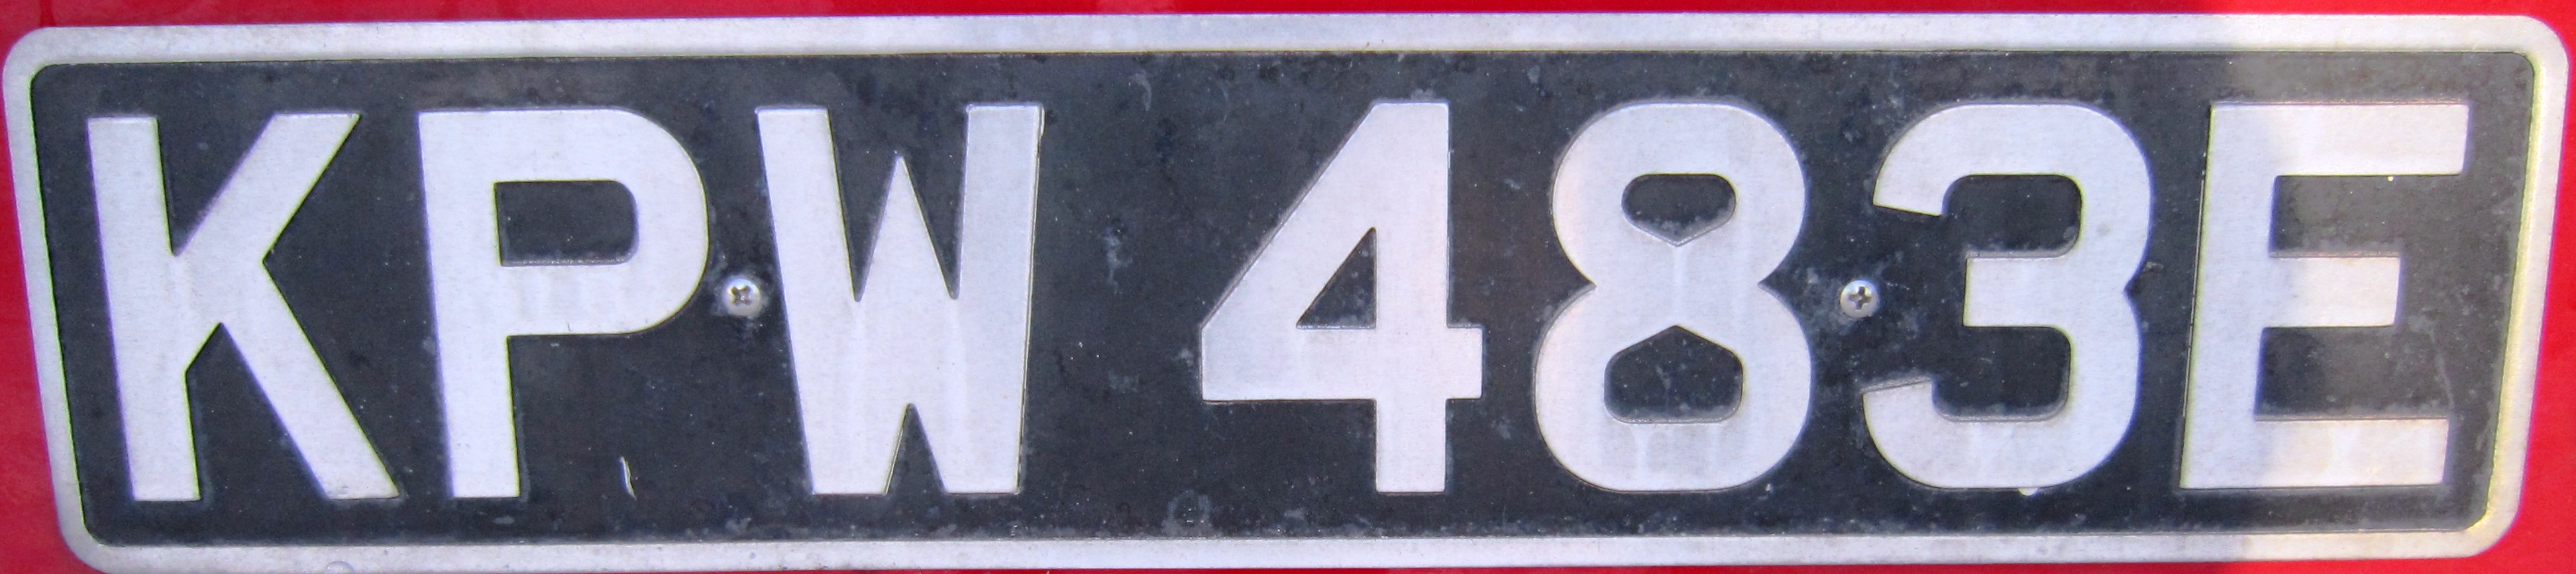 1963 год словами. Британские номерные знаки. Автомобильные номера Великобритании. Военные номера Великобритании. Номерной знак Британия табличка.